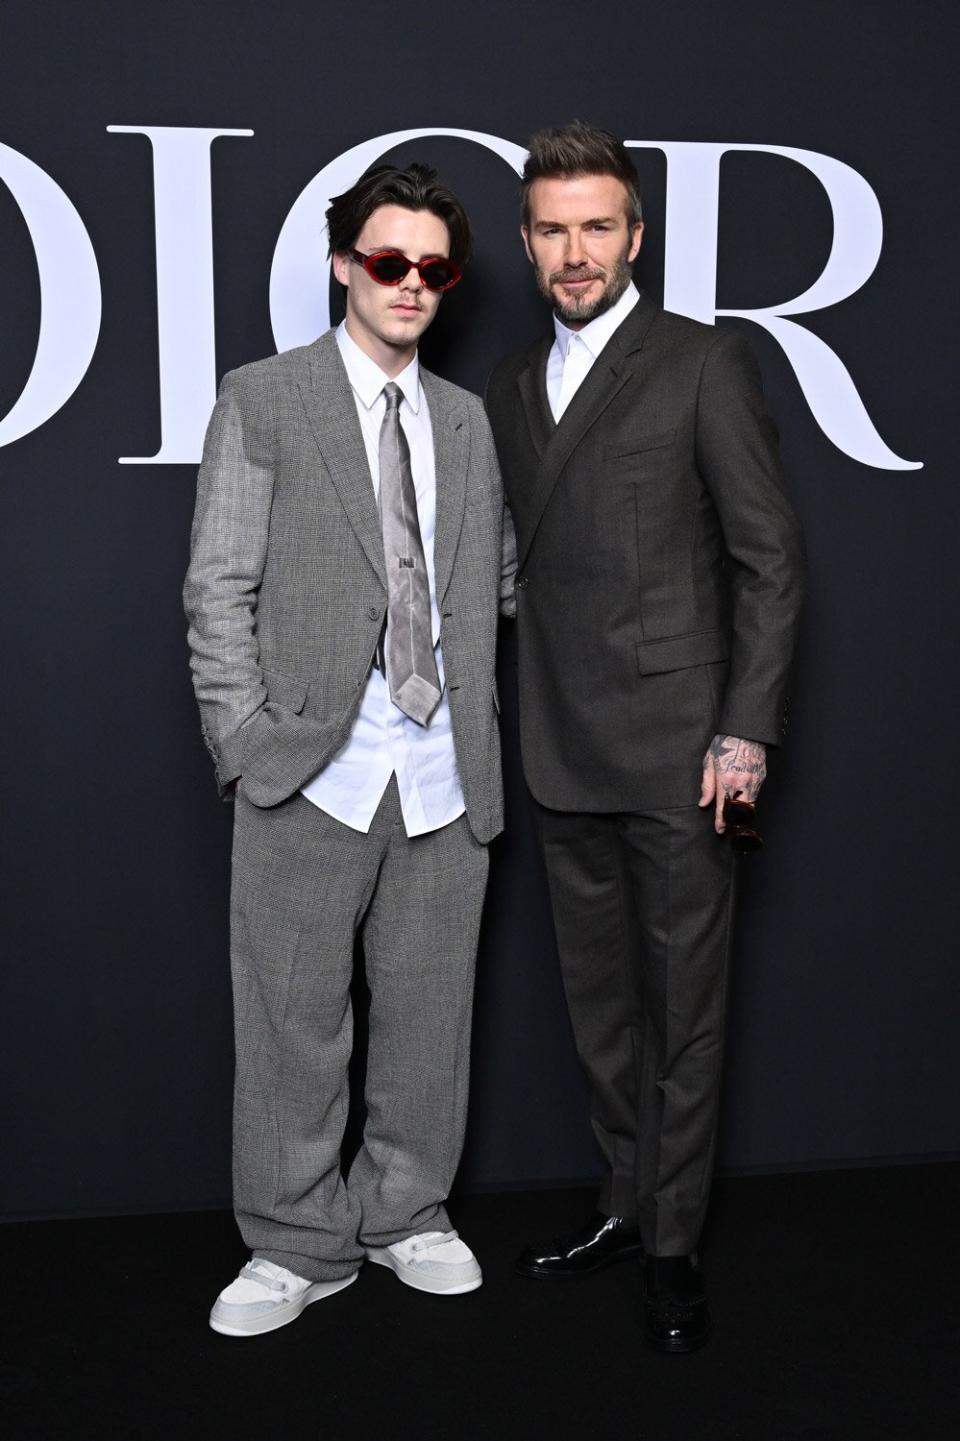 Robert Pattison and Beckham Boys Attend Dior PFW Show